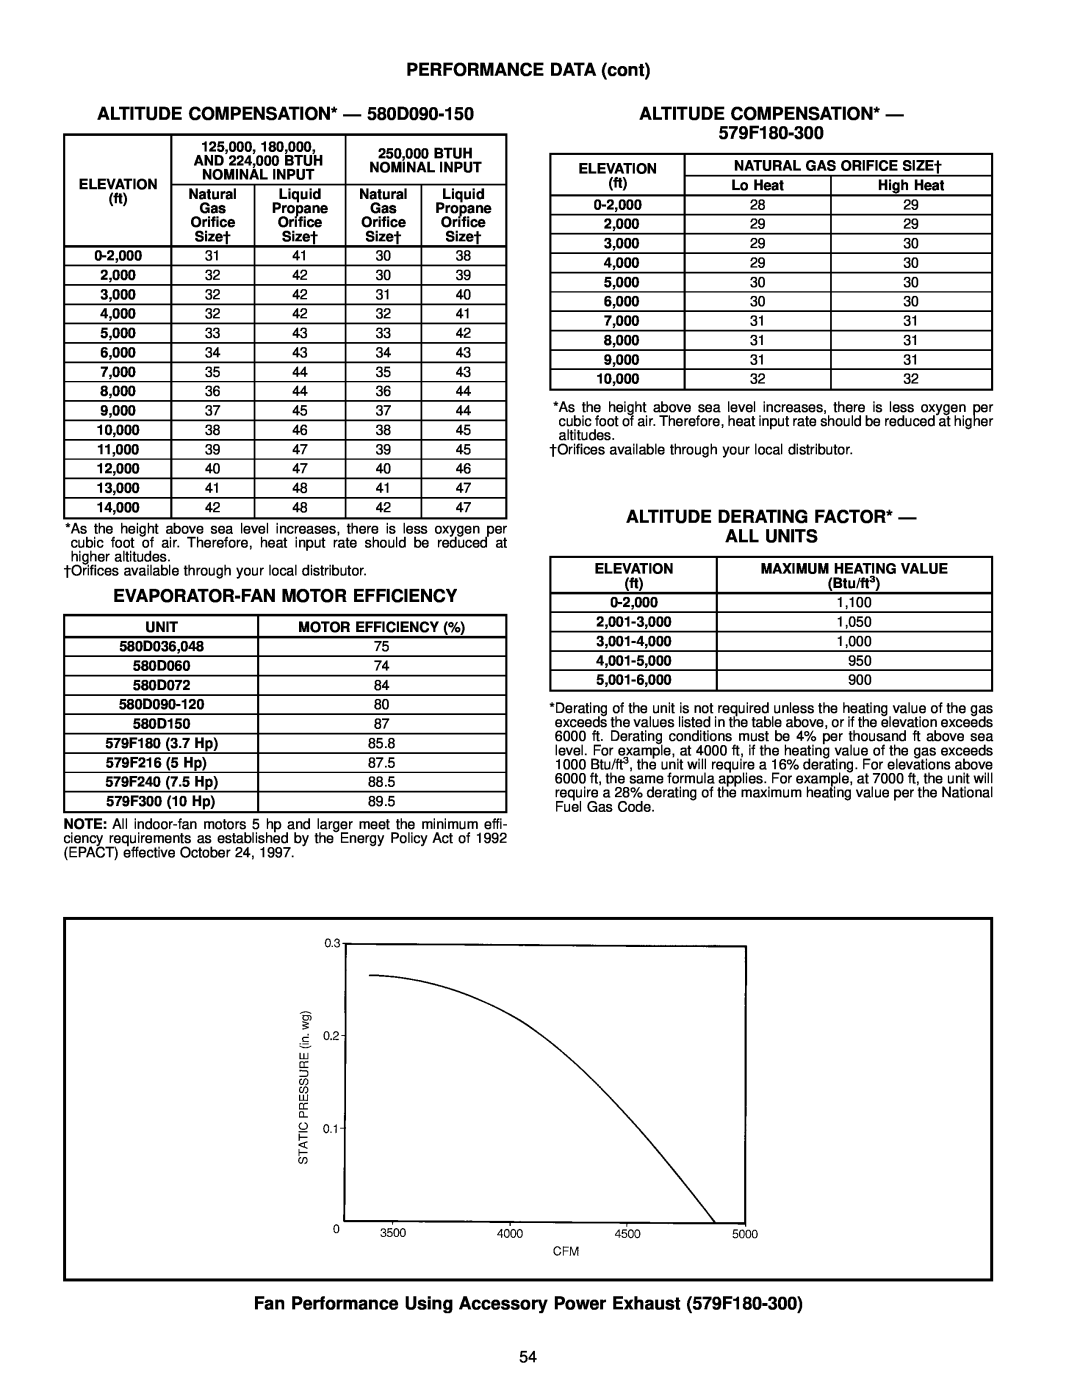 Bryant manual ALTITUDE COMPENSATION* Ð 580D090-150, Evaporator-Fanmotor Efficiency, ALTITUDE COMPENSATION* Ð 579F180-300 